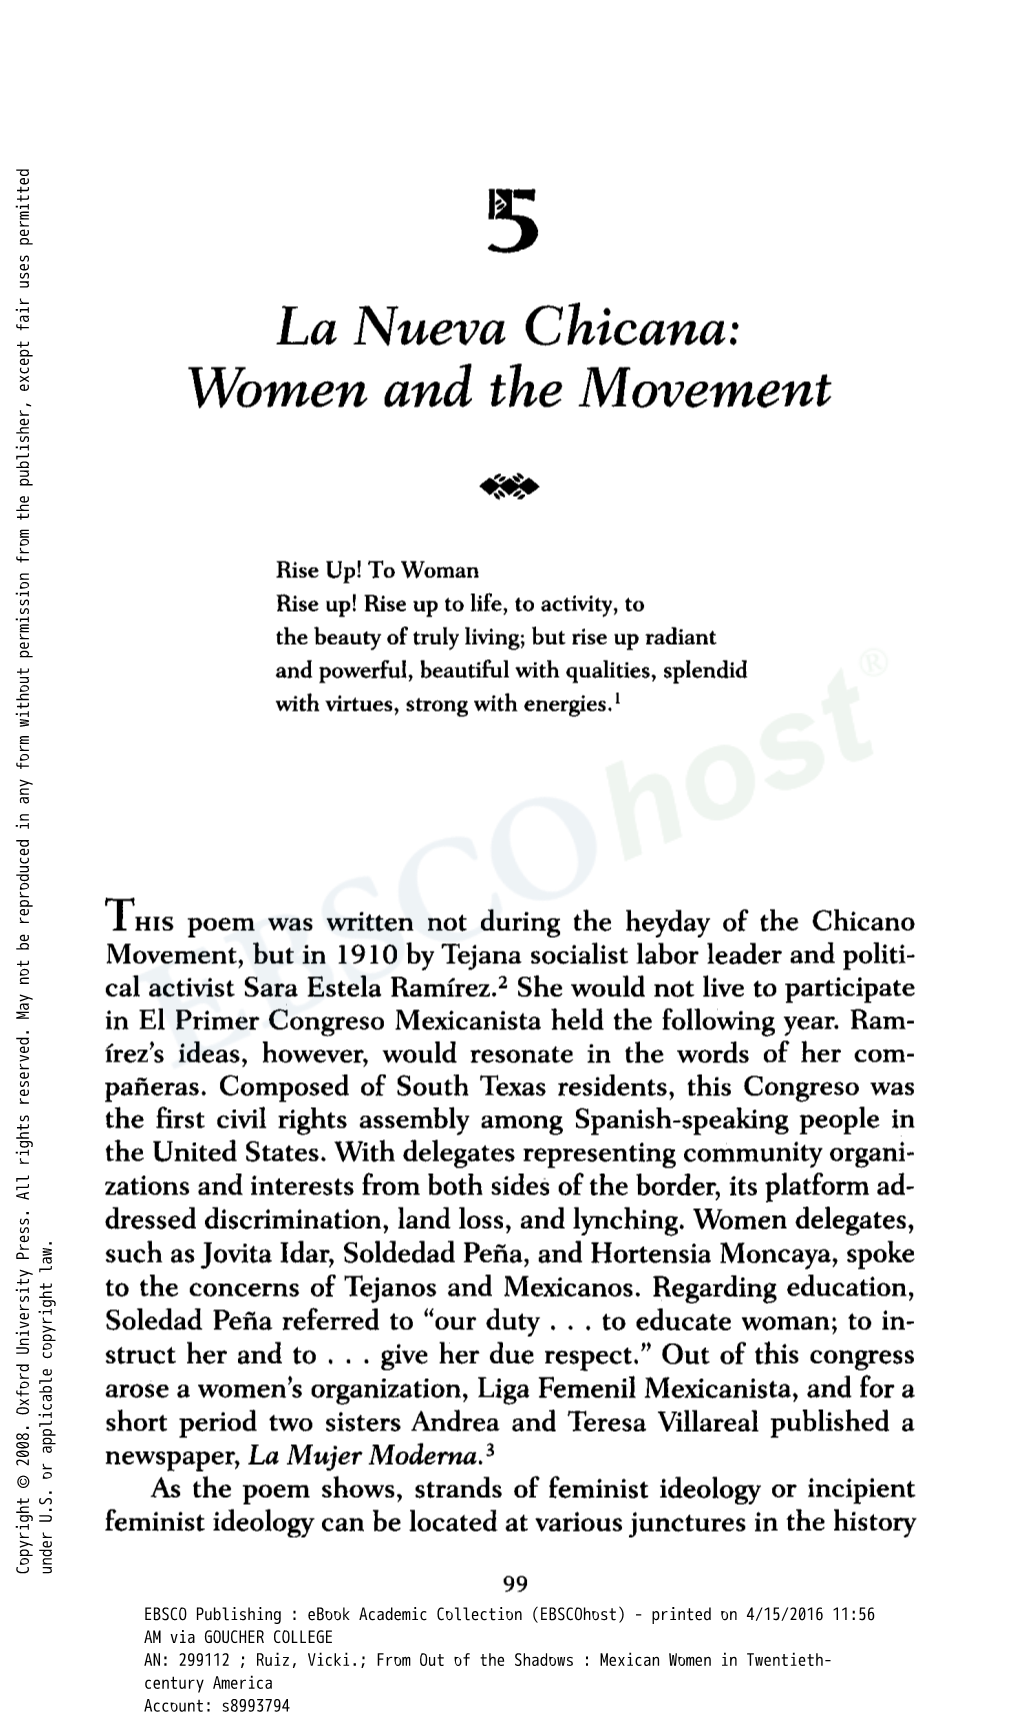 La Nueva Chicana: Women and the Movement